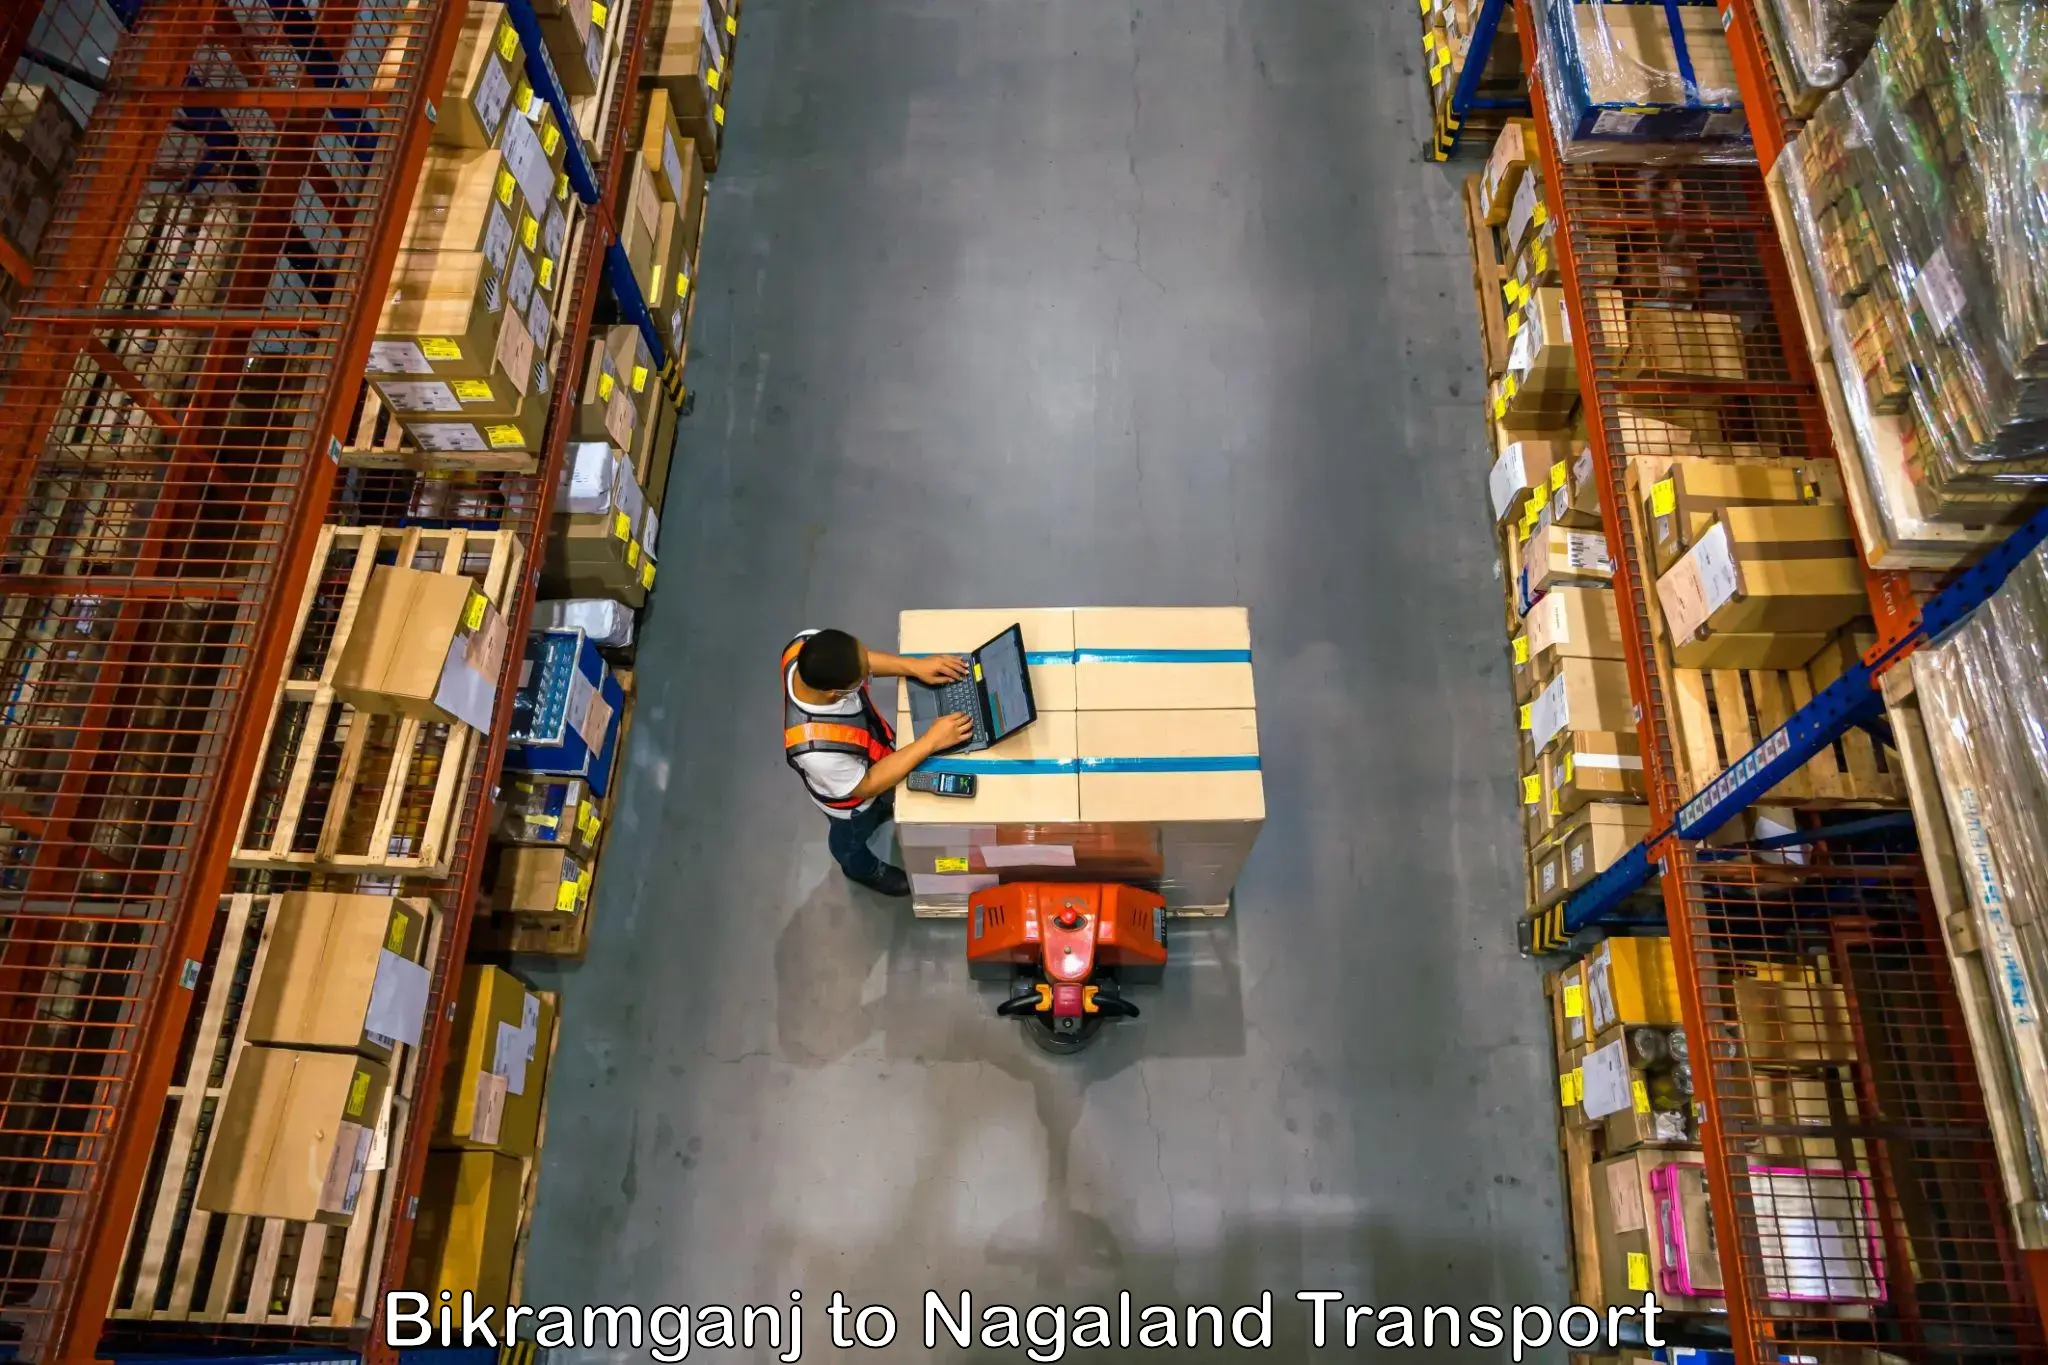 Online transport service Bikramganj to Nagaland